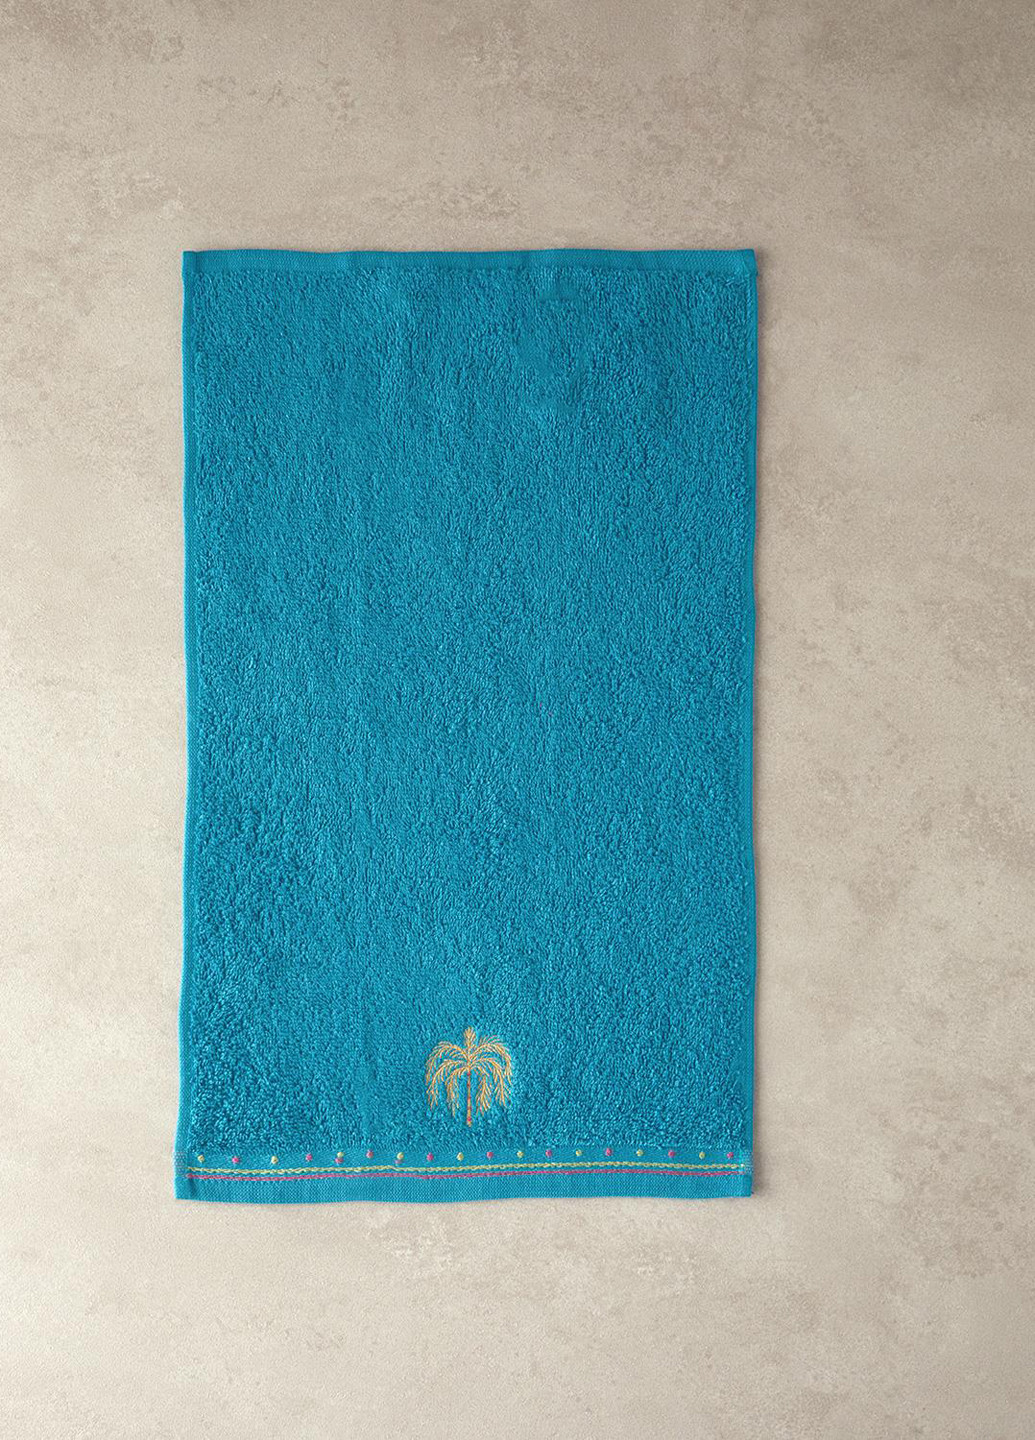 English Home полотенце кухонное, 30х50 см однотонный синий производство - Турция